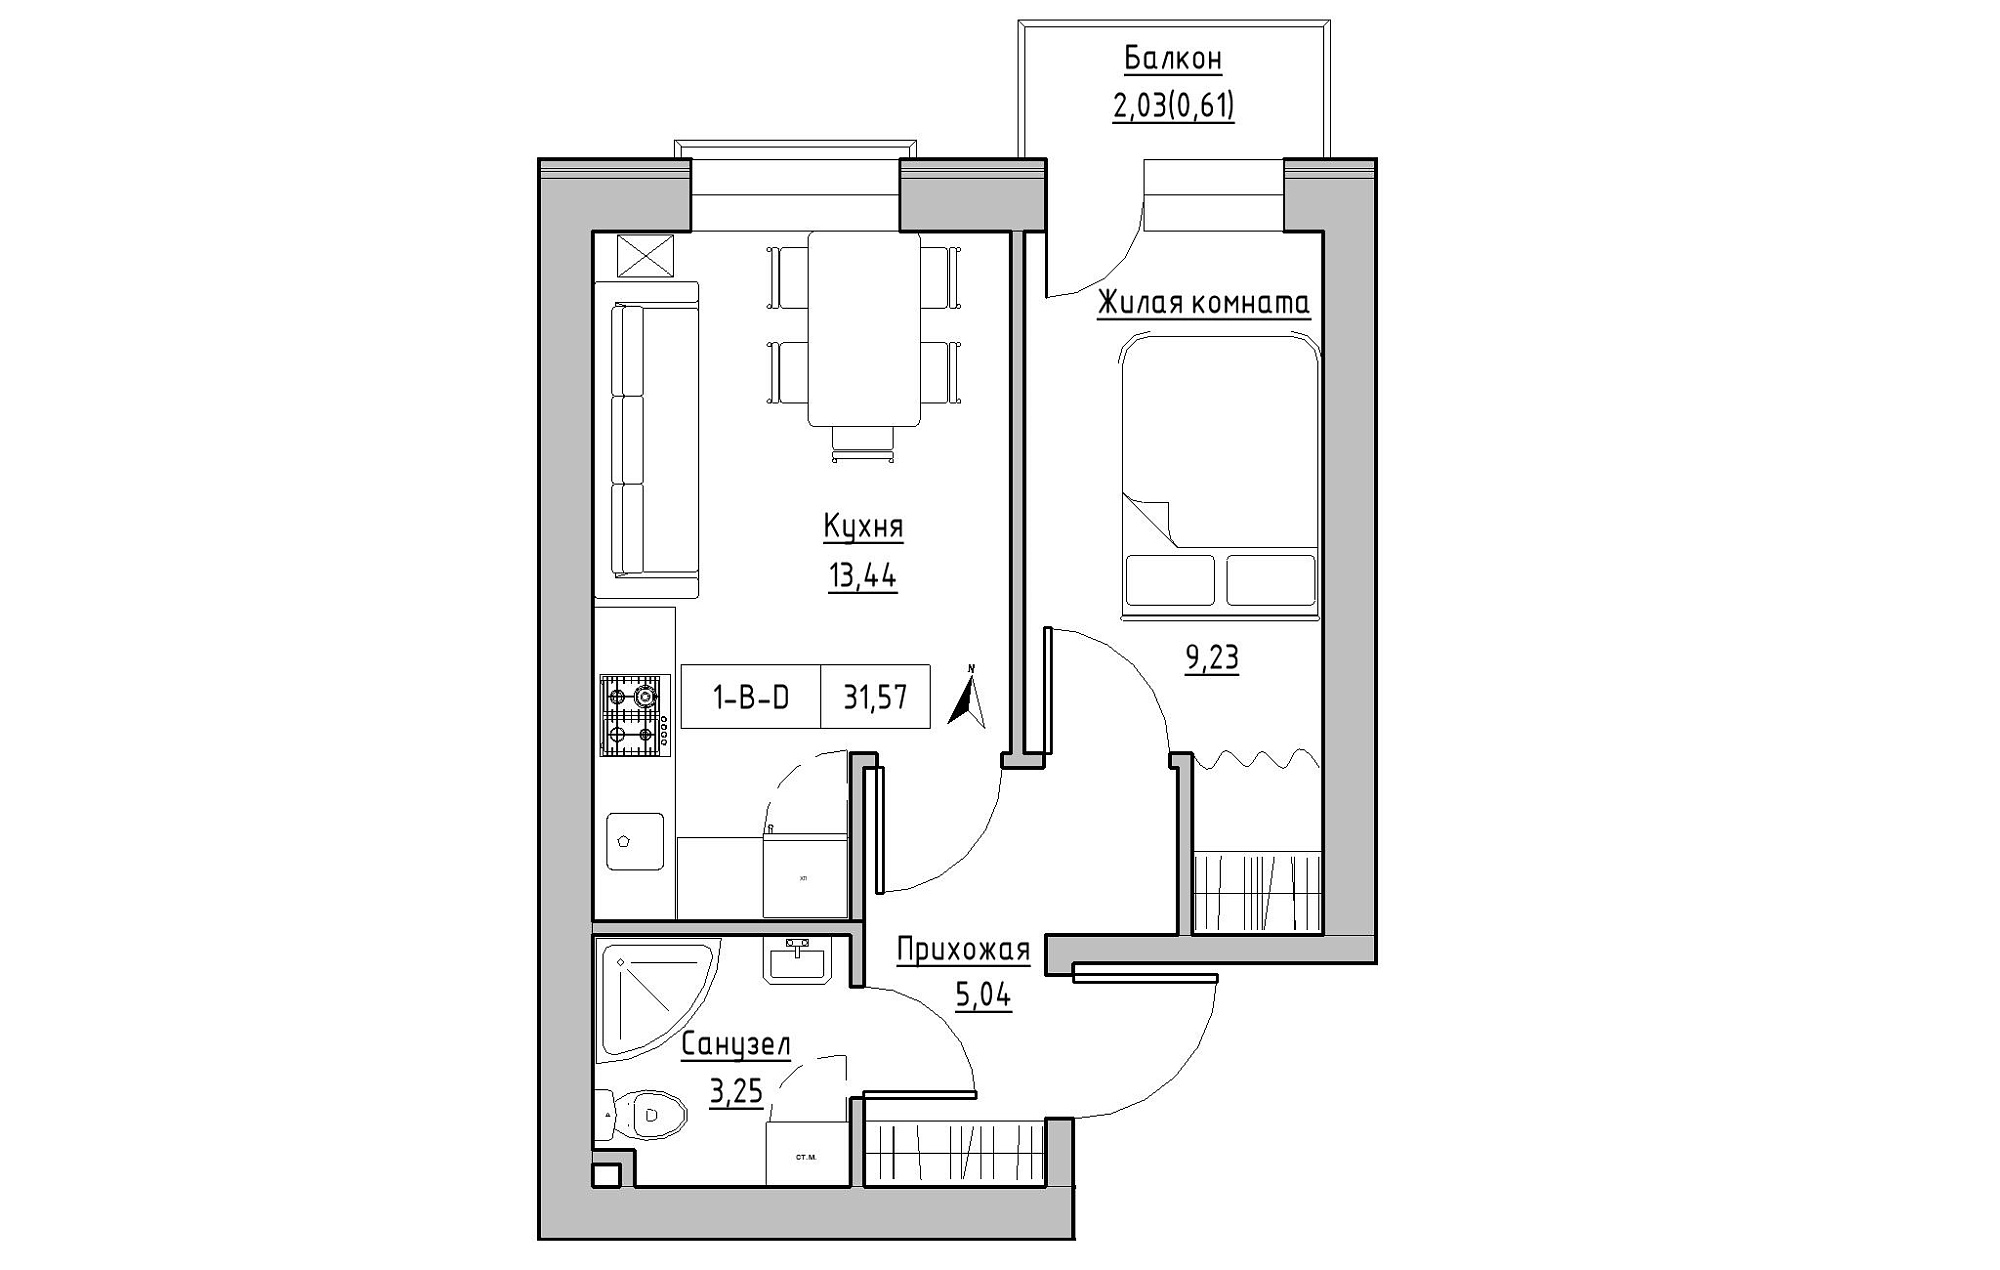 Планування 1-к квартира площею 31.57м2, KS-019-02/0013.